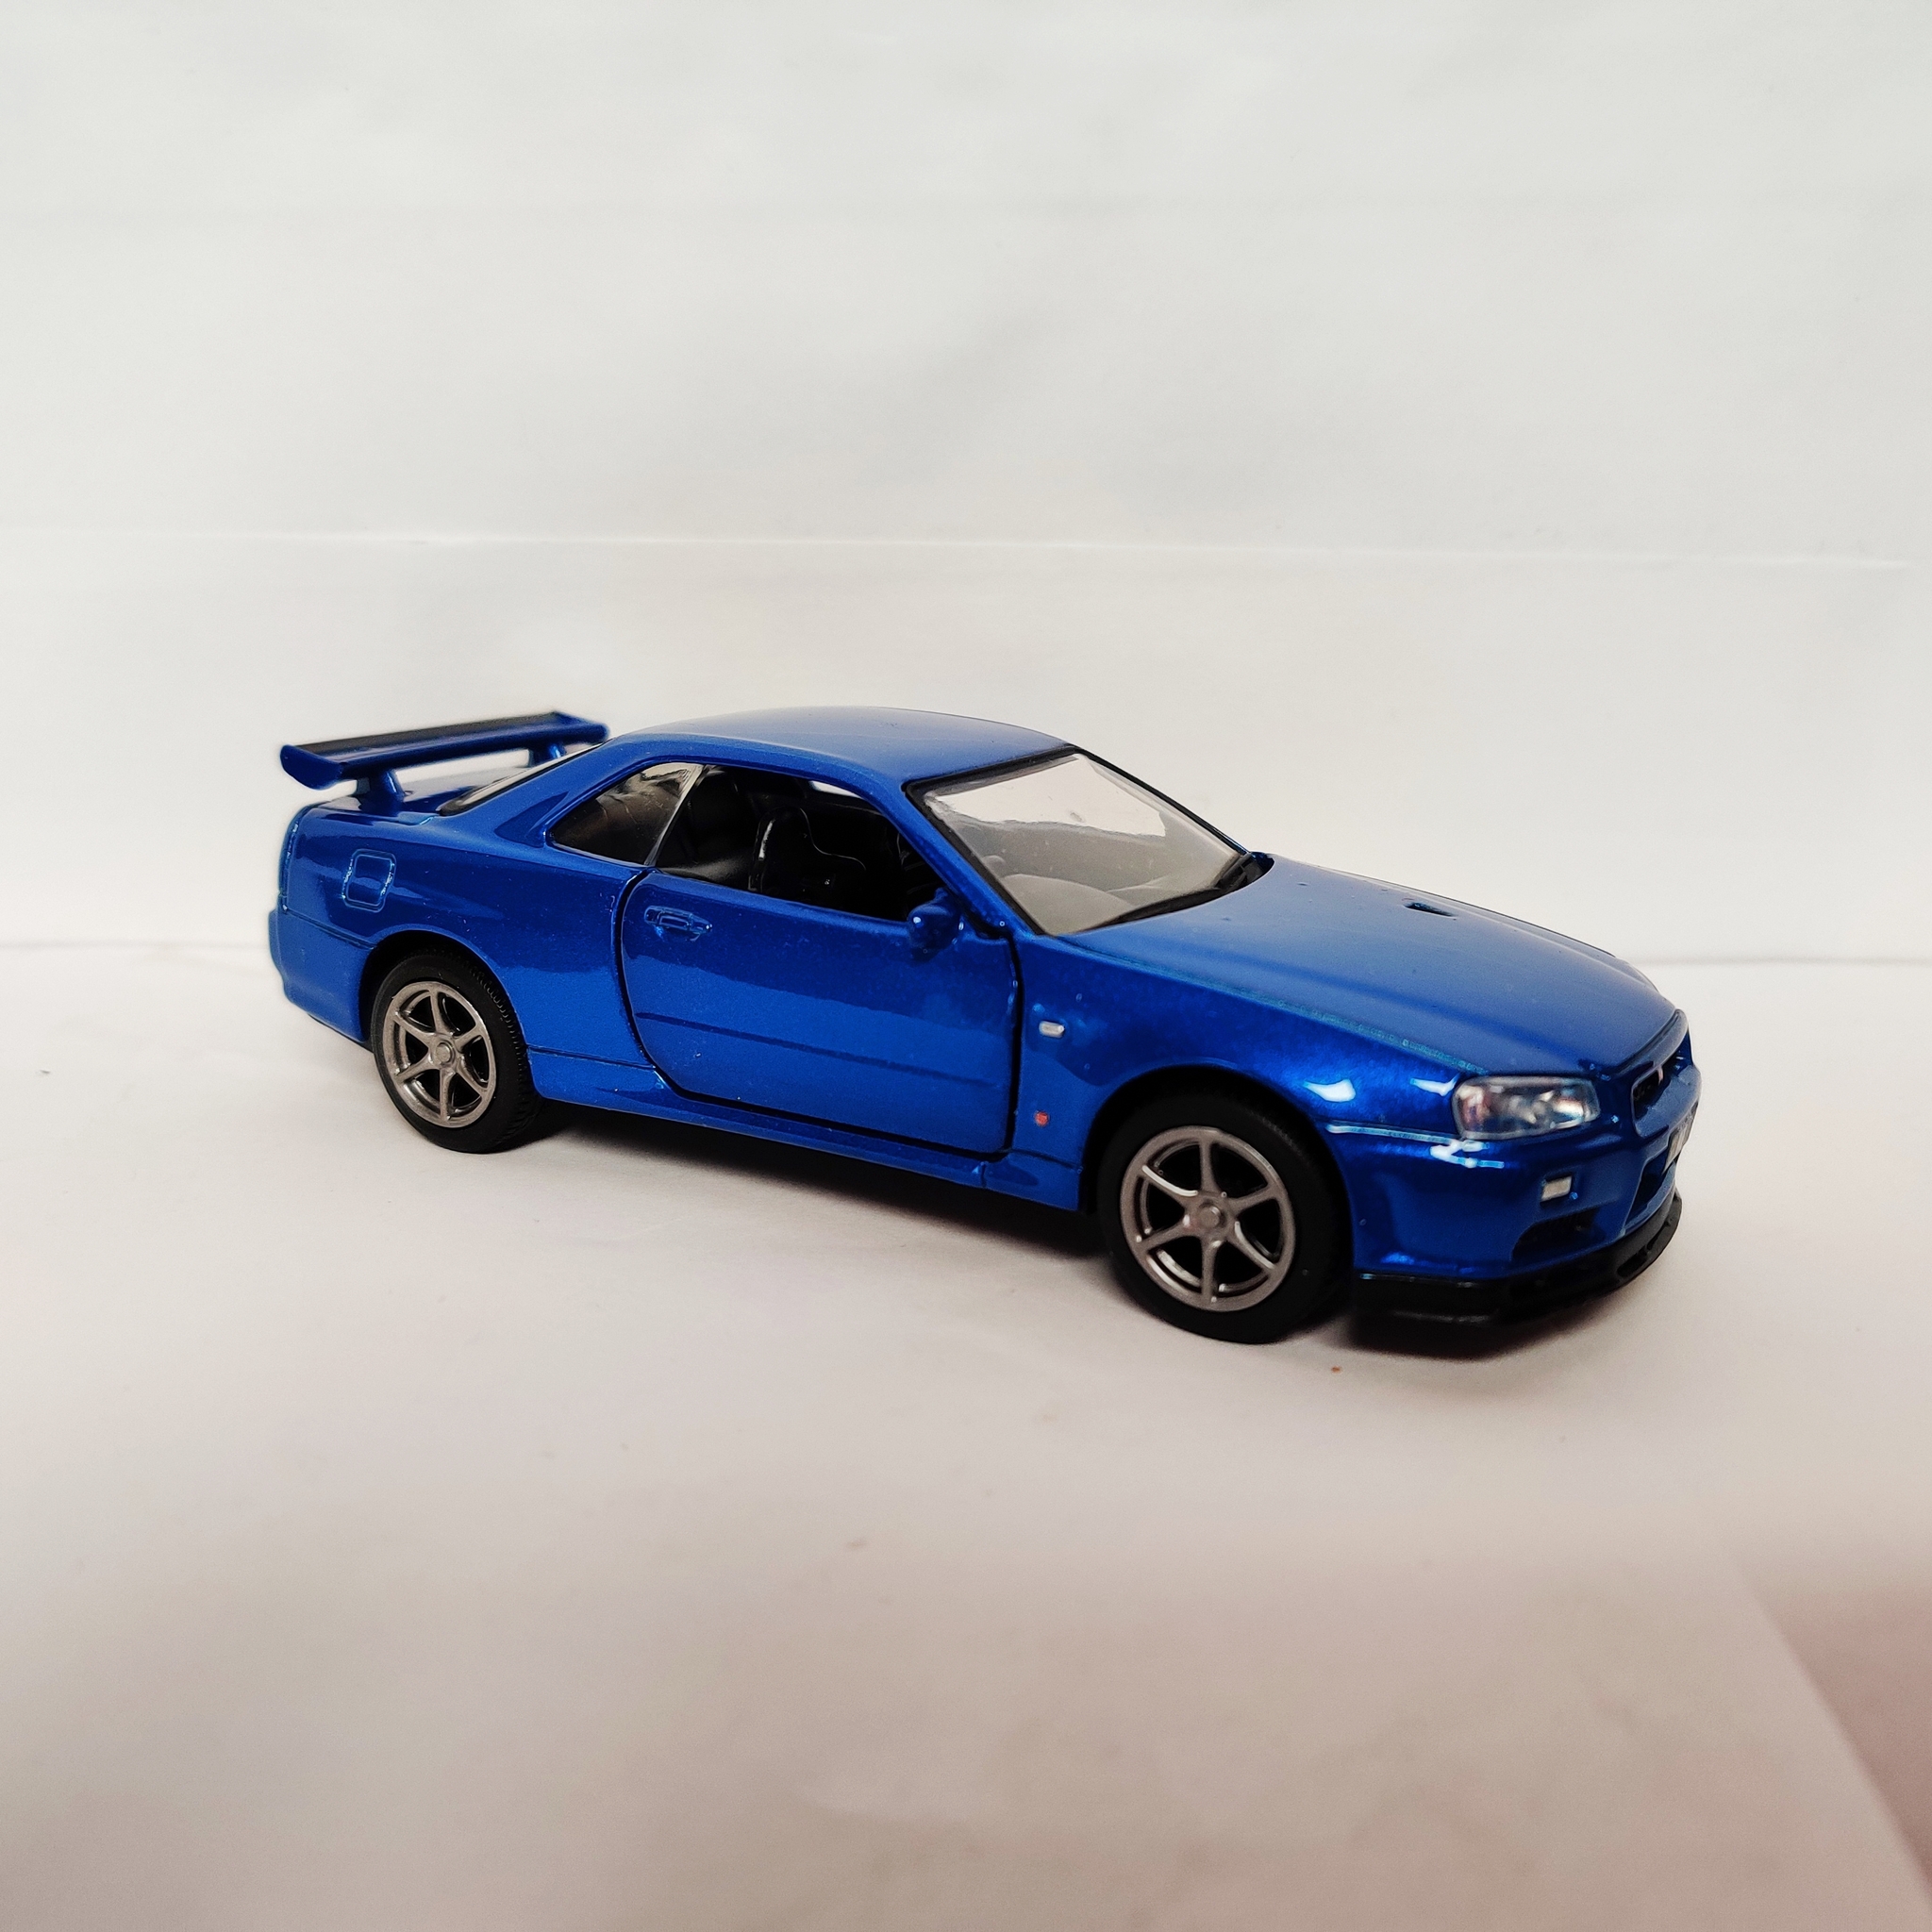 Skala 1/36 Nissan GT-R34 V-Spec II, vänsterstyrd, Blå metalic från Tayumo